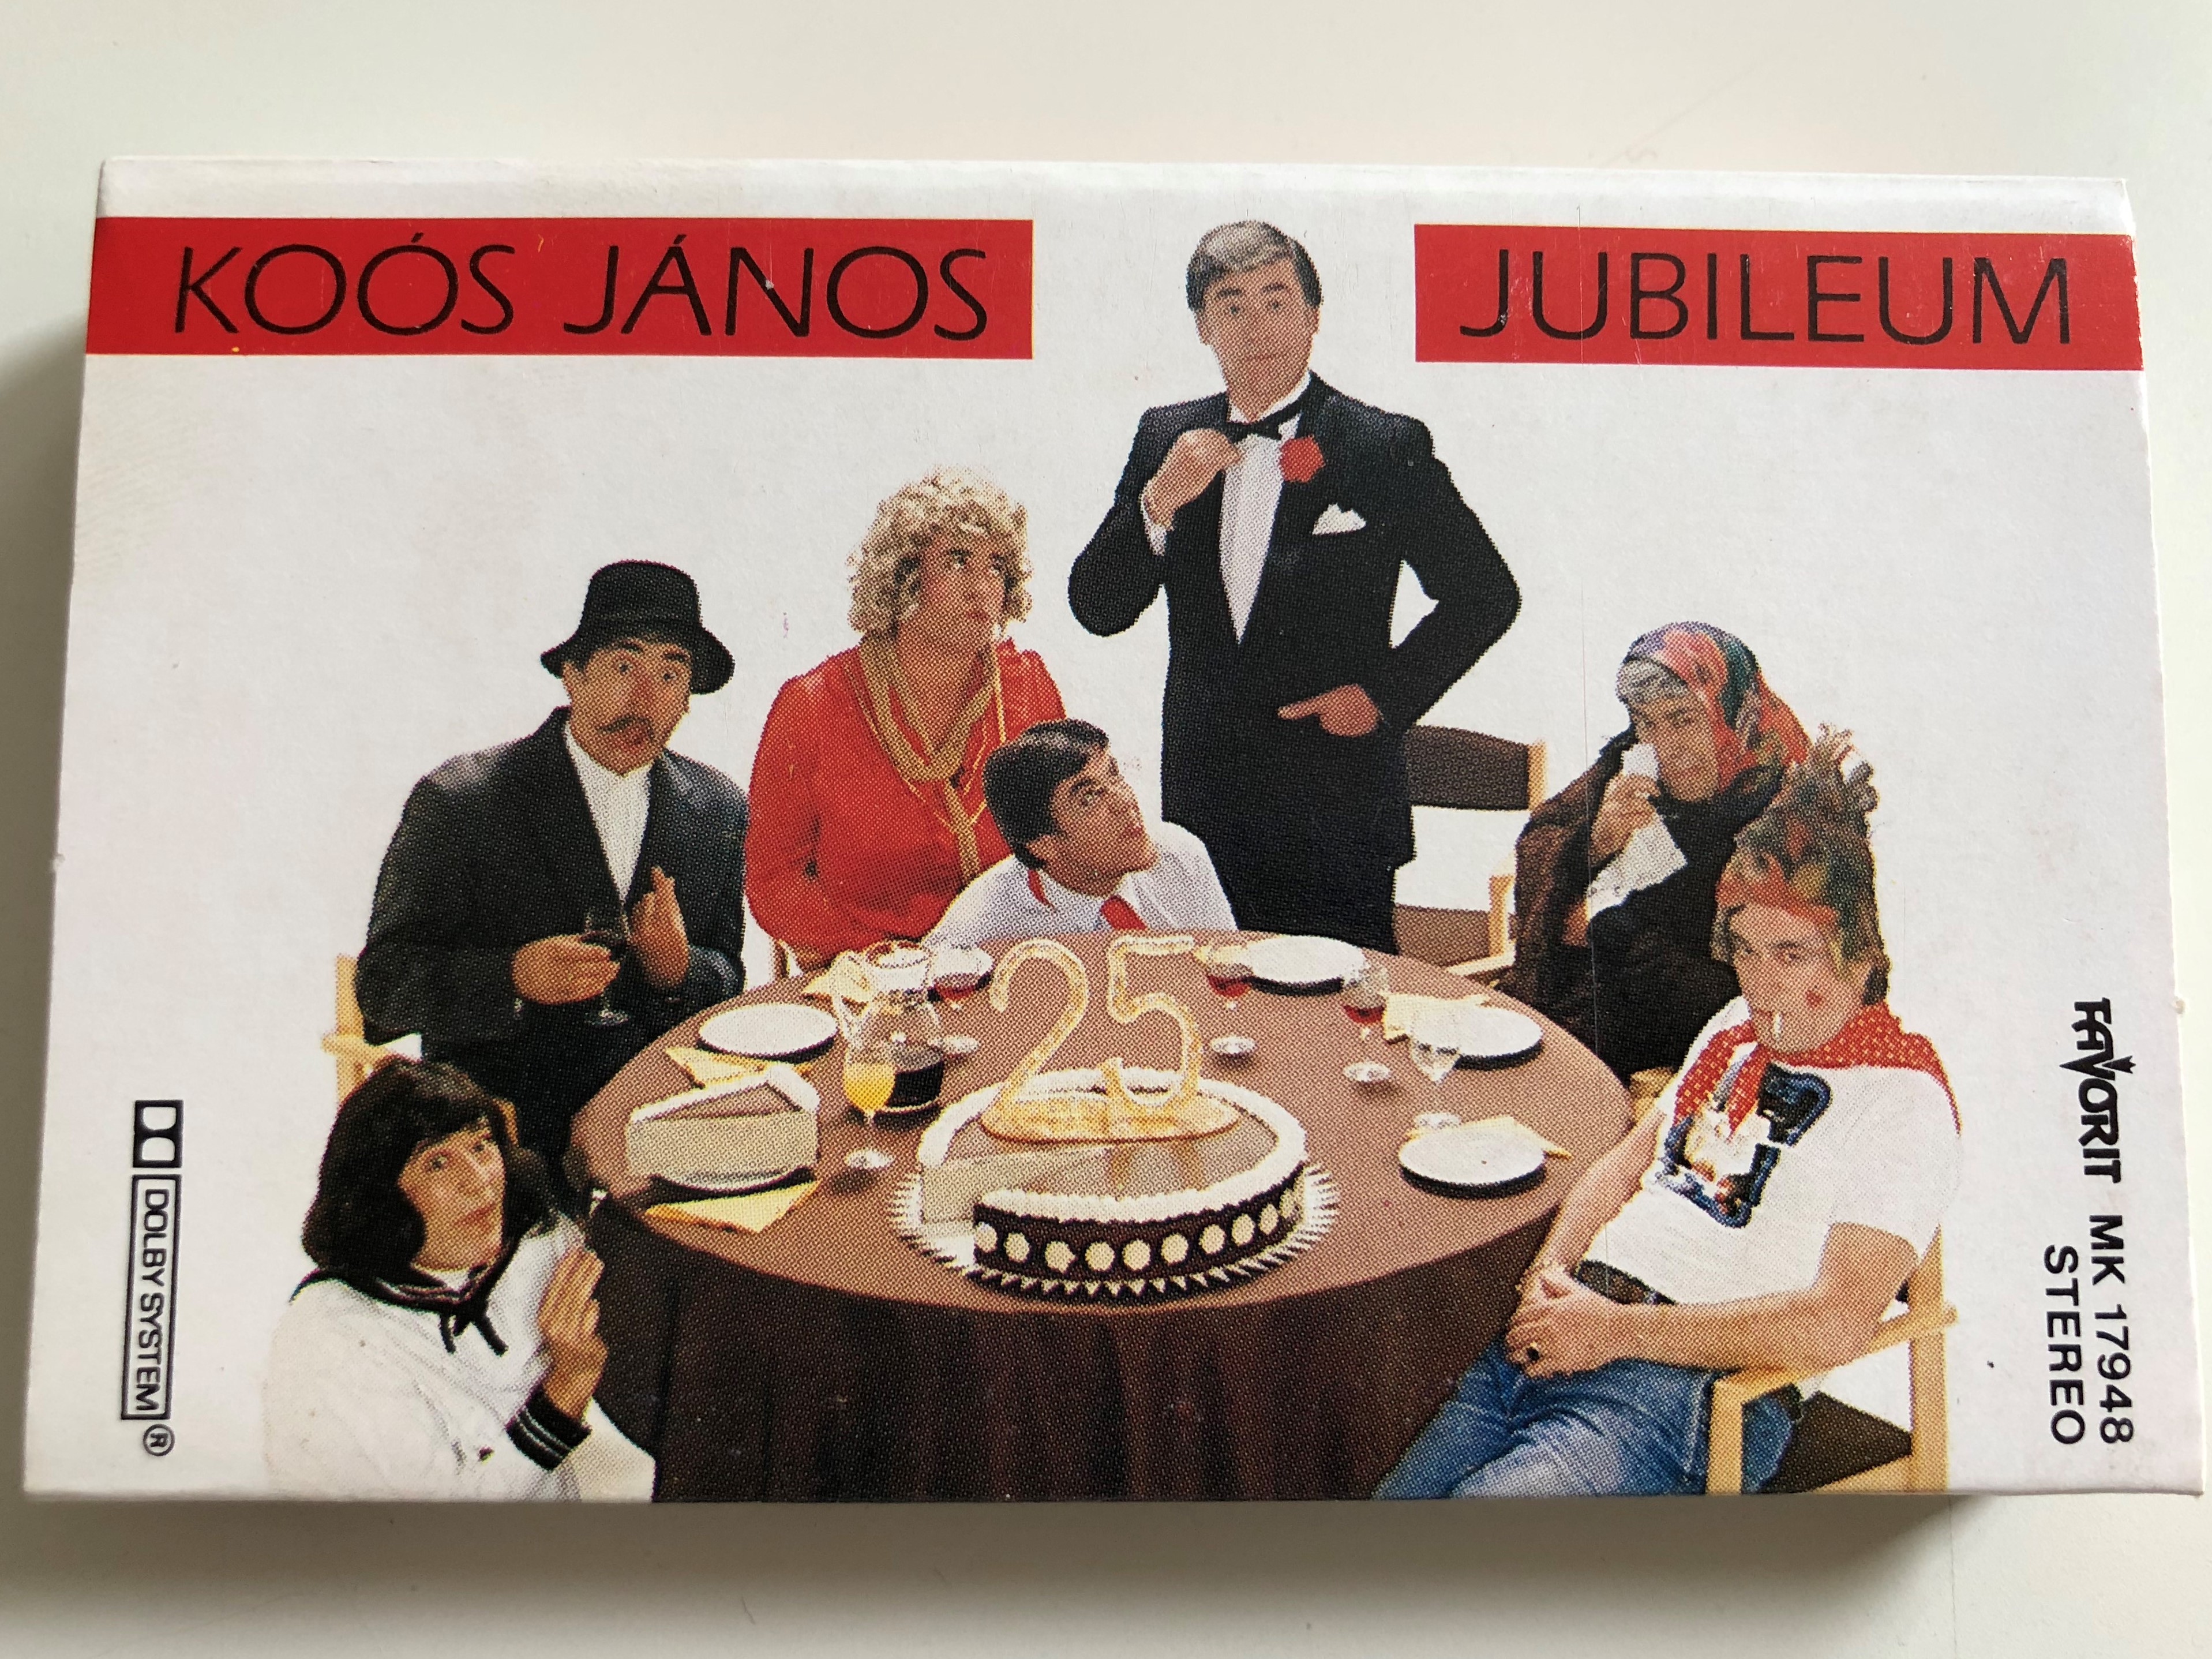 ko-s-j-nos-jubileum-favorit-cassette-stereo-mk-17948-1-.jpg